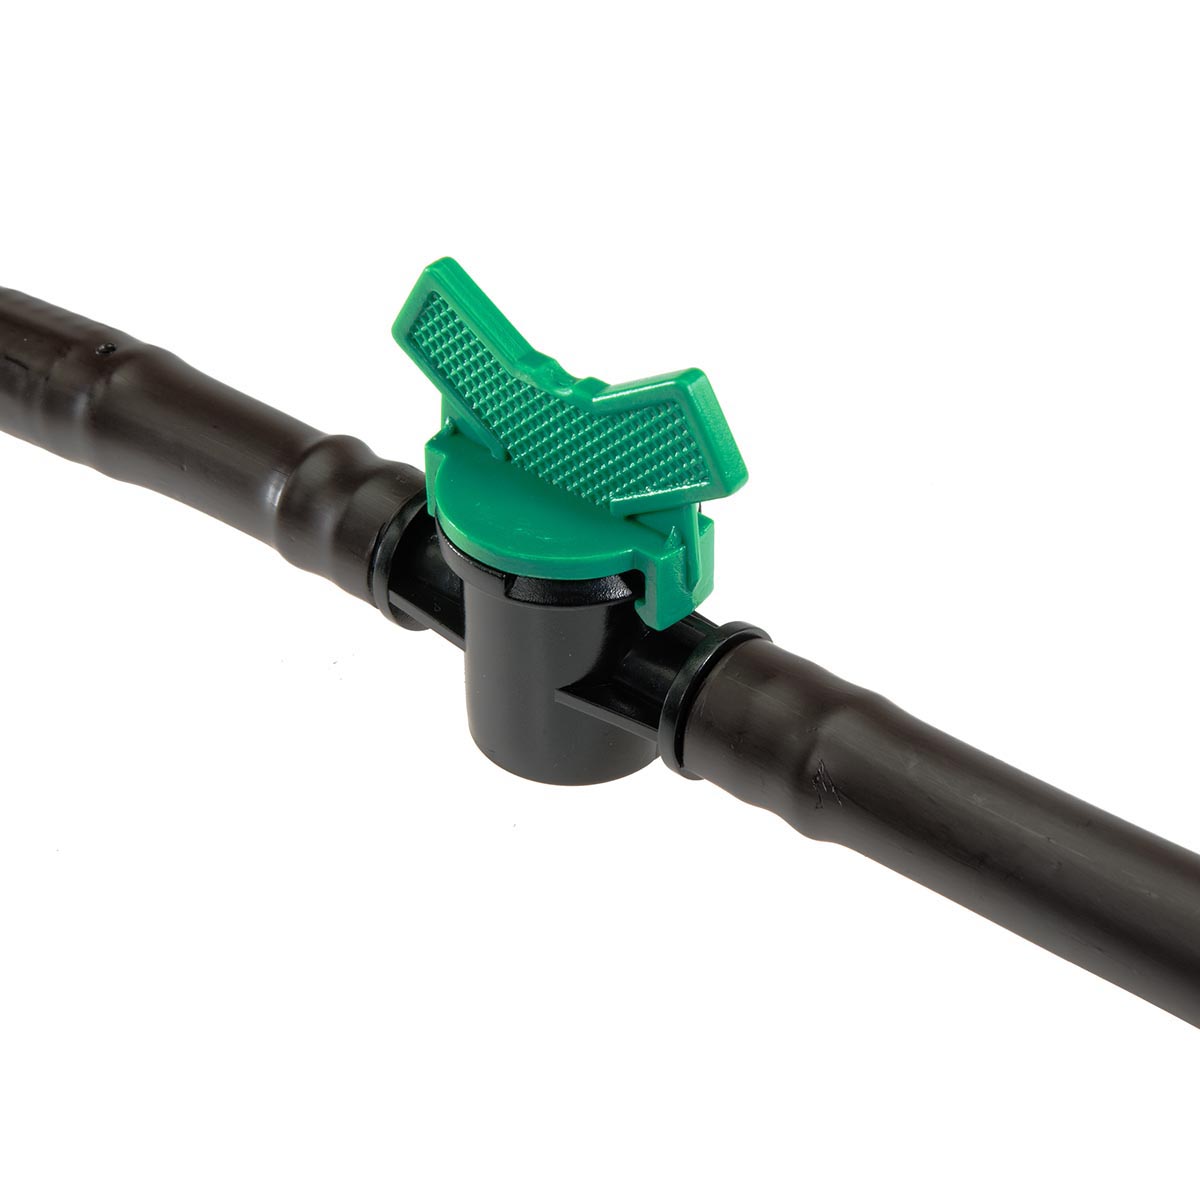 Valvola per tubi flessibili 16mm x 16mm valvola per irrigazione valvola a sfera 1pc.